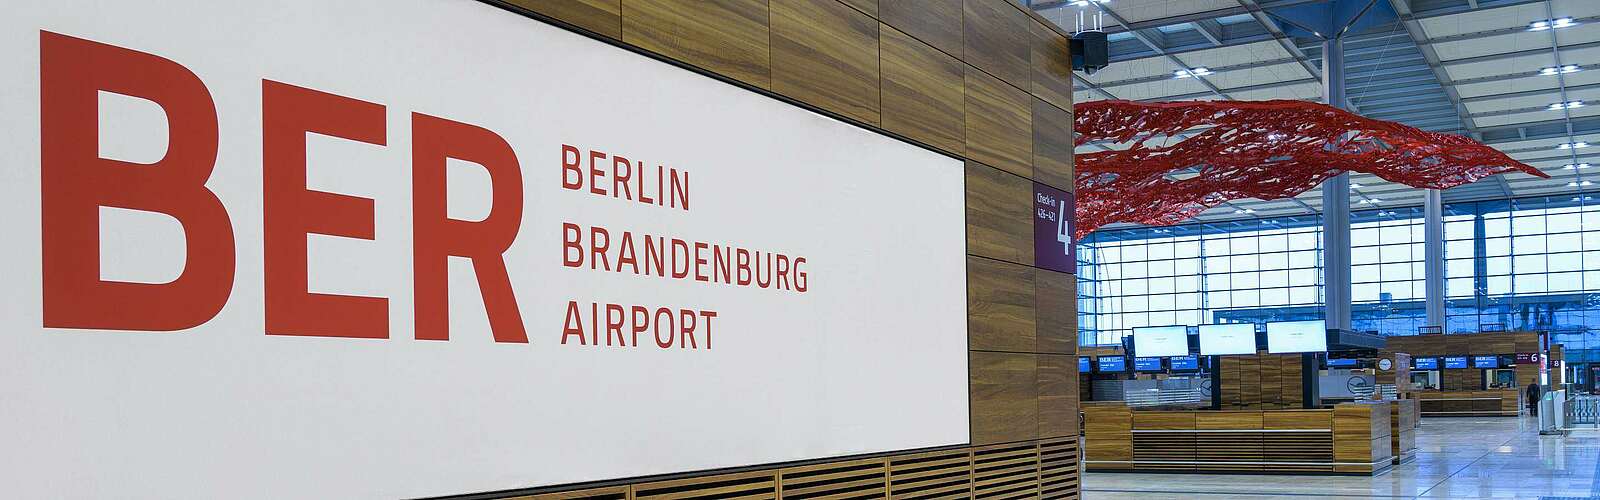 BER Flughafen,
        
    

        
        
            Picture: Flughafen Berlin Brandenburg GmbH